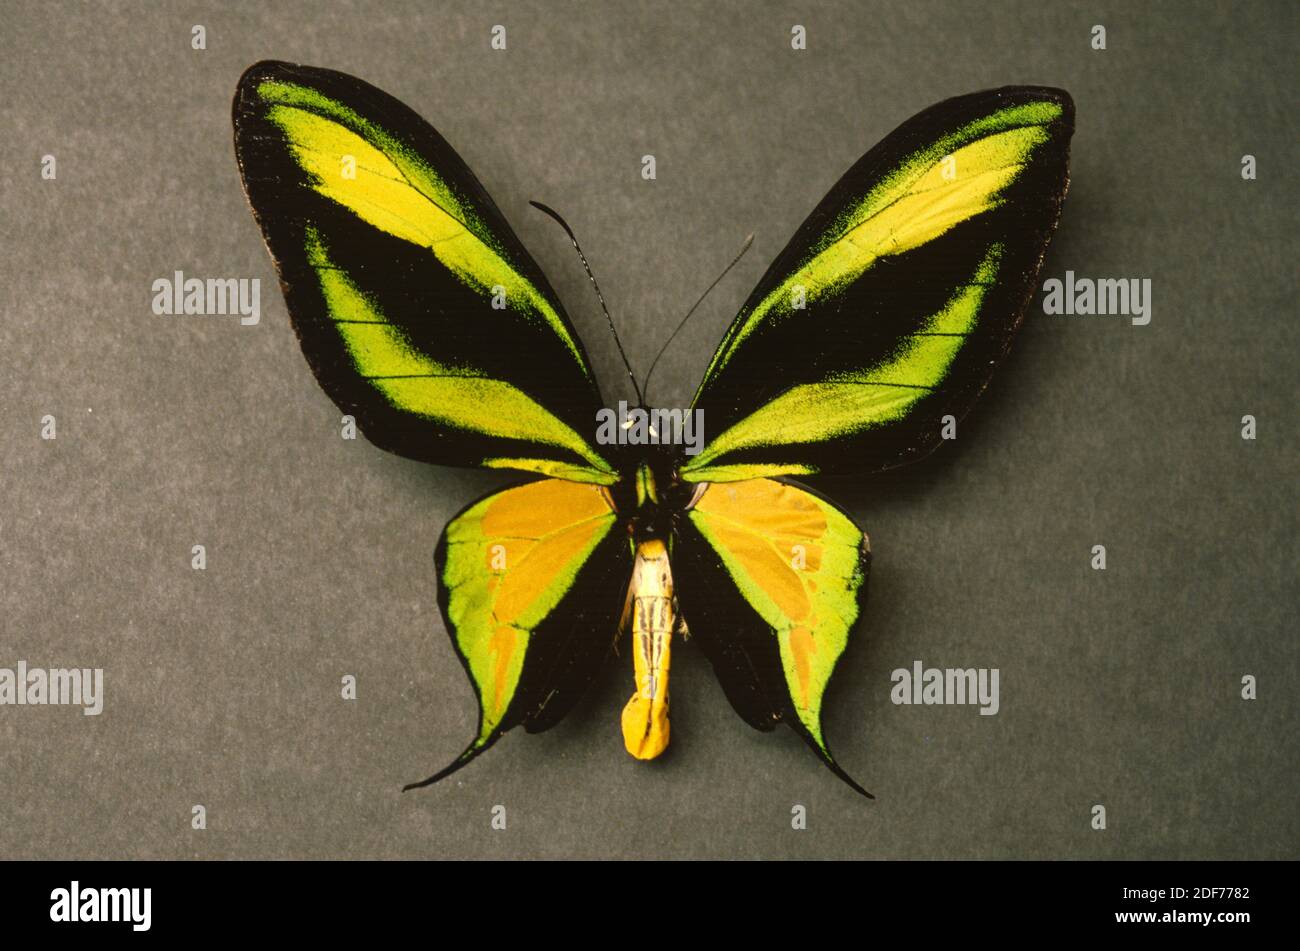 Le papillon paradisiaque (Ornithoptera paradisea arfakensis) est un papillon originaire de Nouvelle-Guinée. Mâle, côté dorsal. Banque D'Images